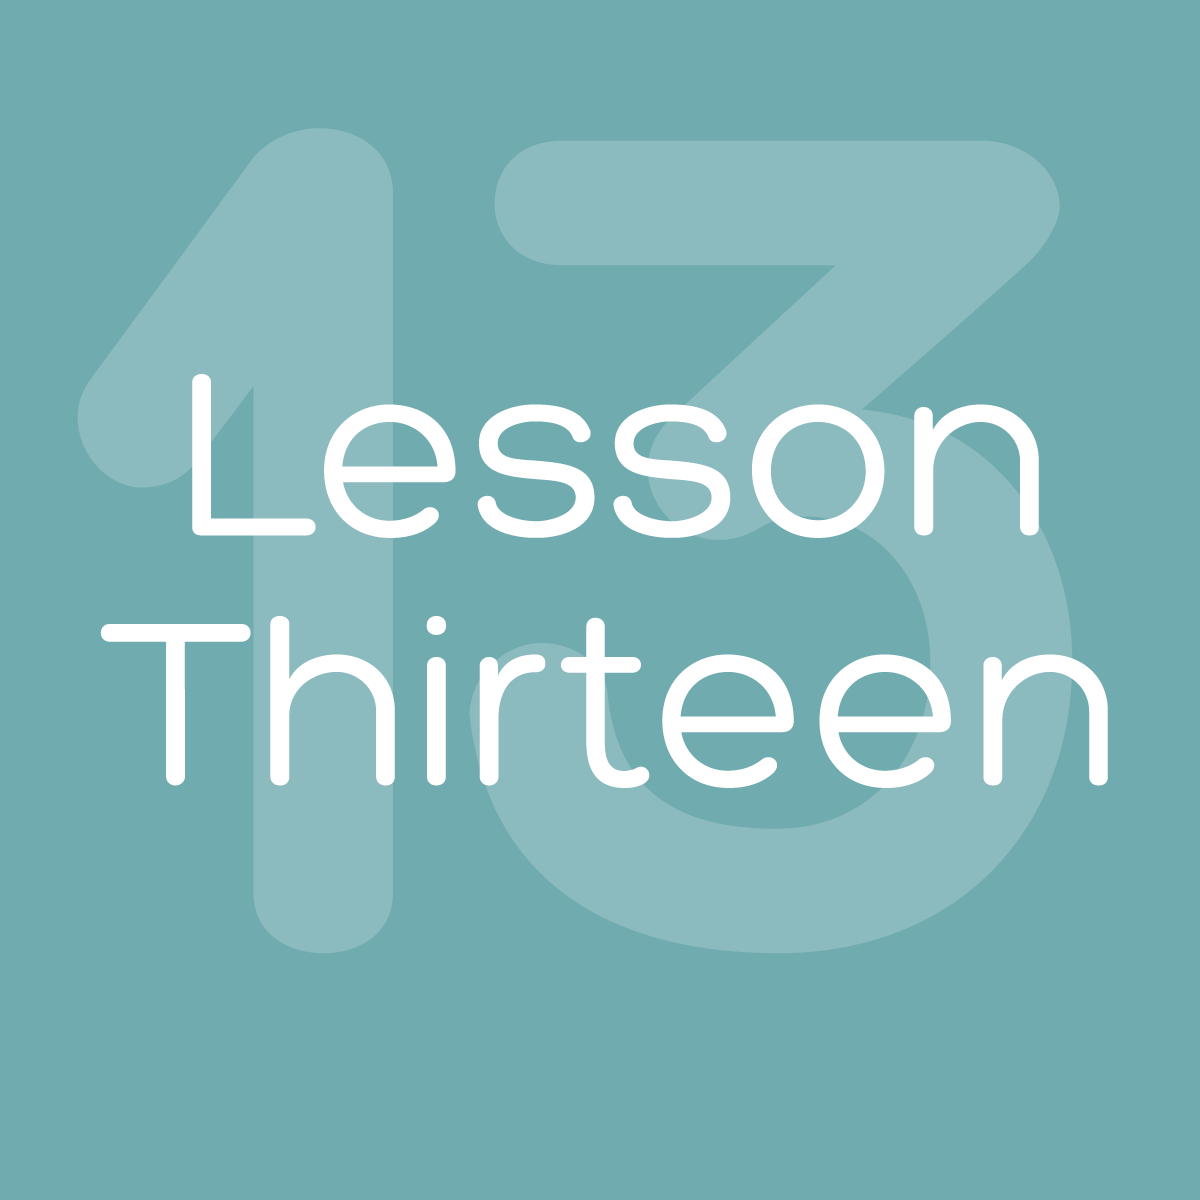 Lesson 13